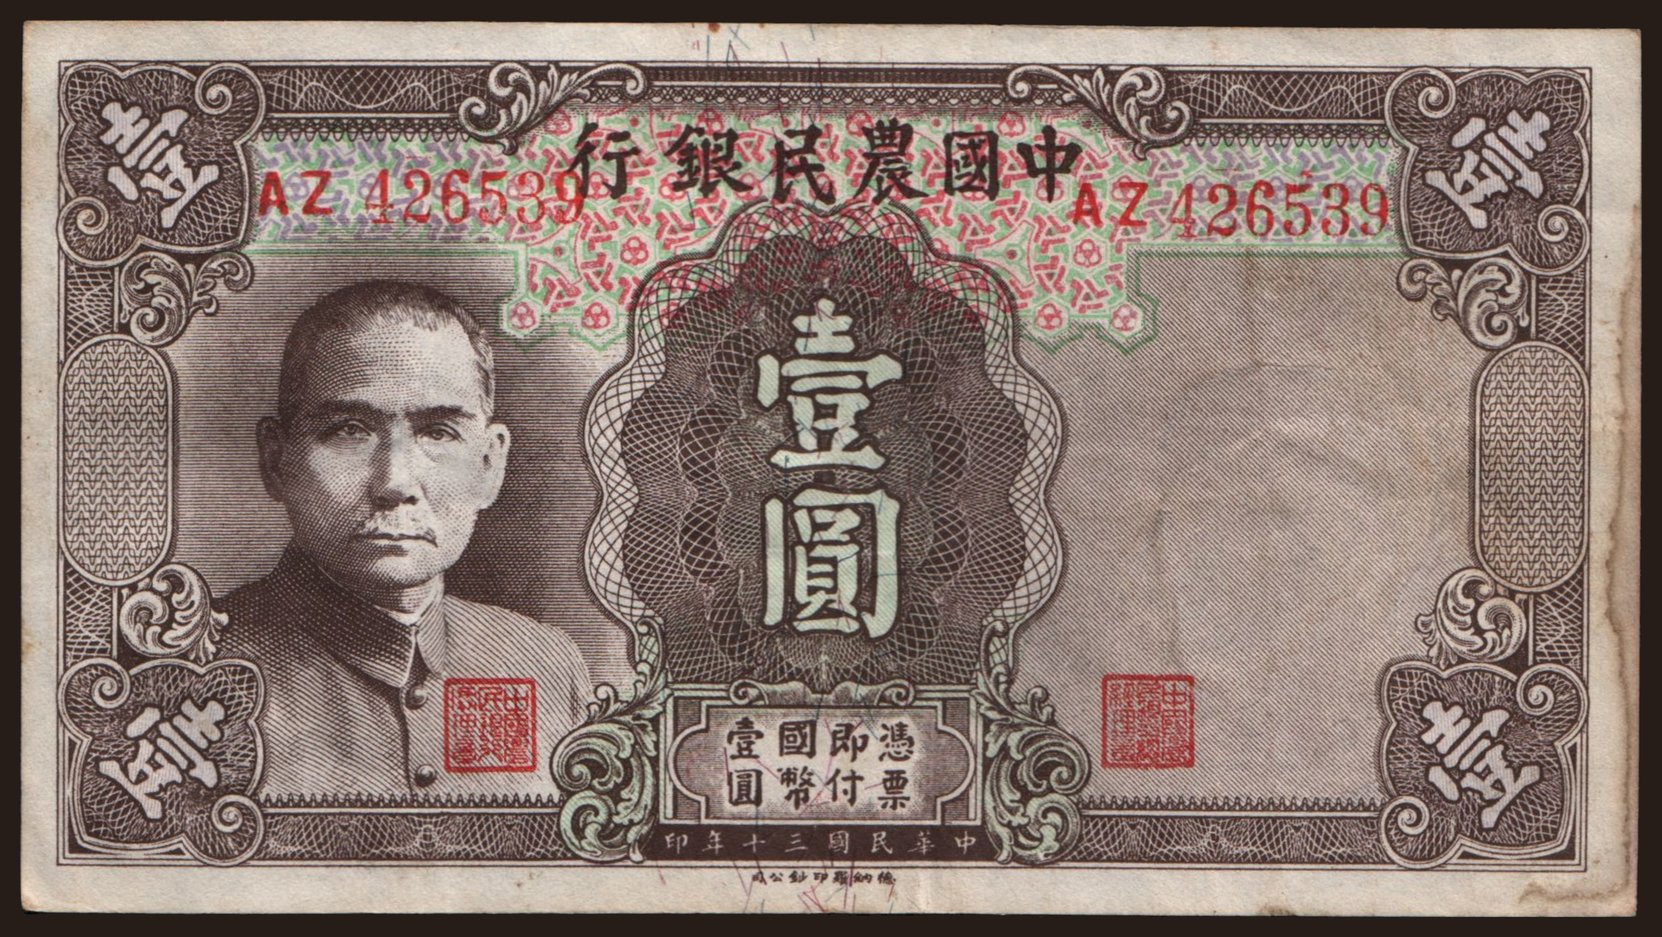 Farmers Bank of China, 1 yuan, 1941